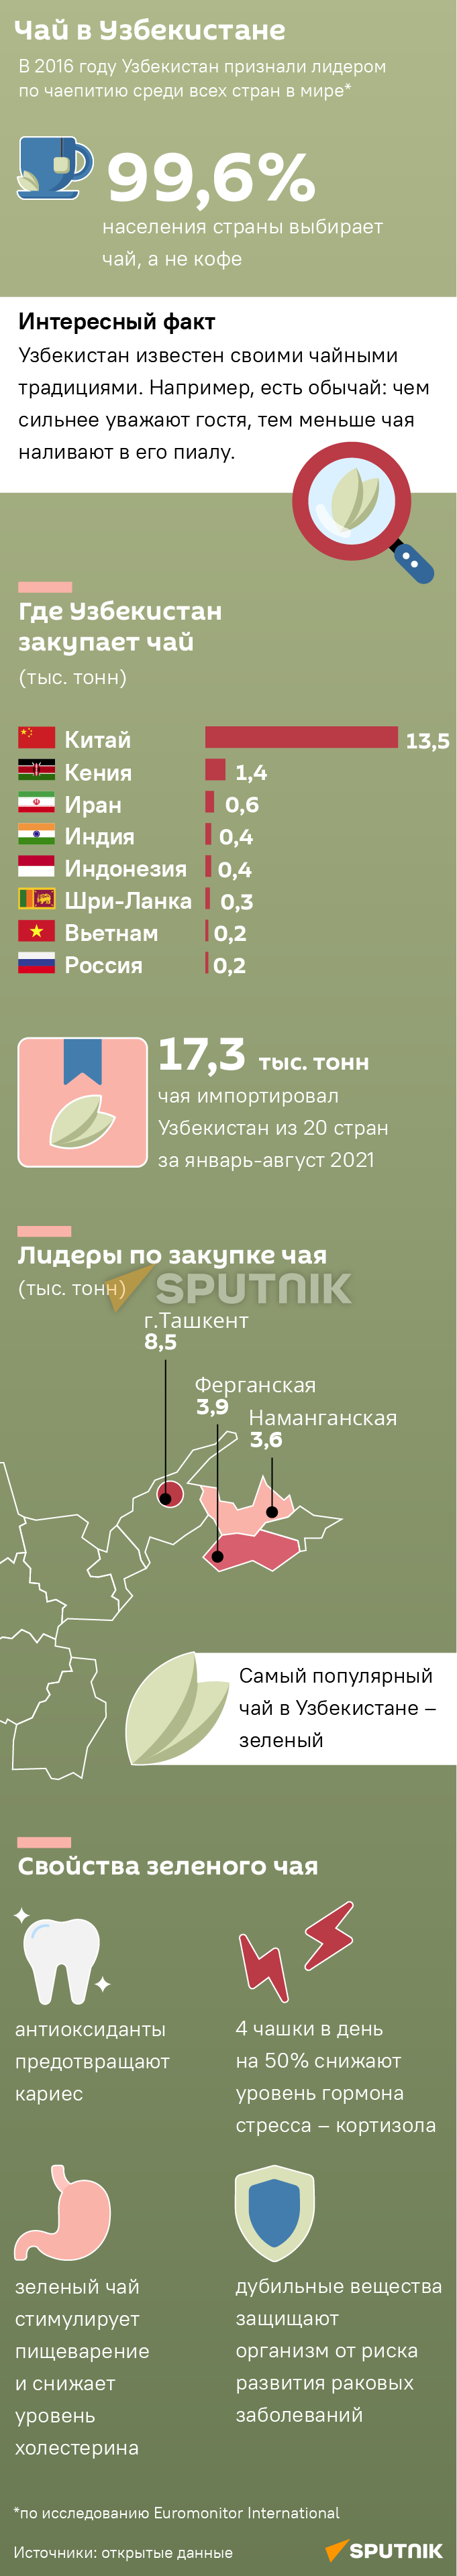 Чай в Узбекистане мобилка - Sputnik Узбекистан